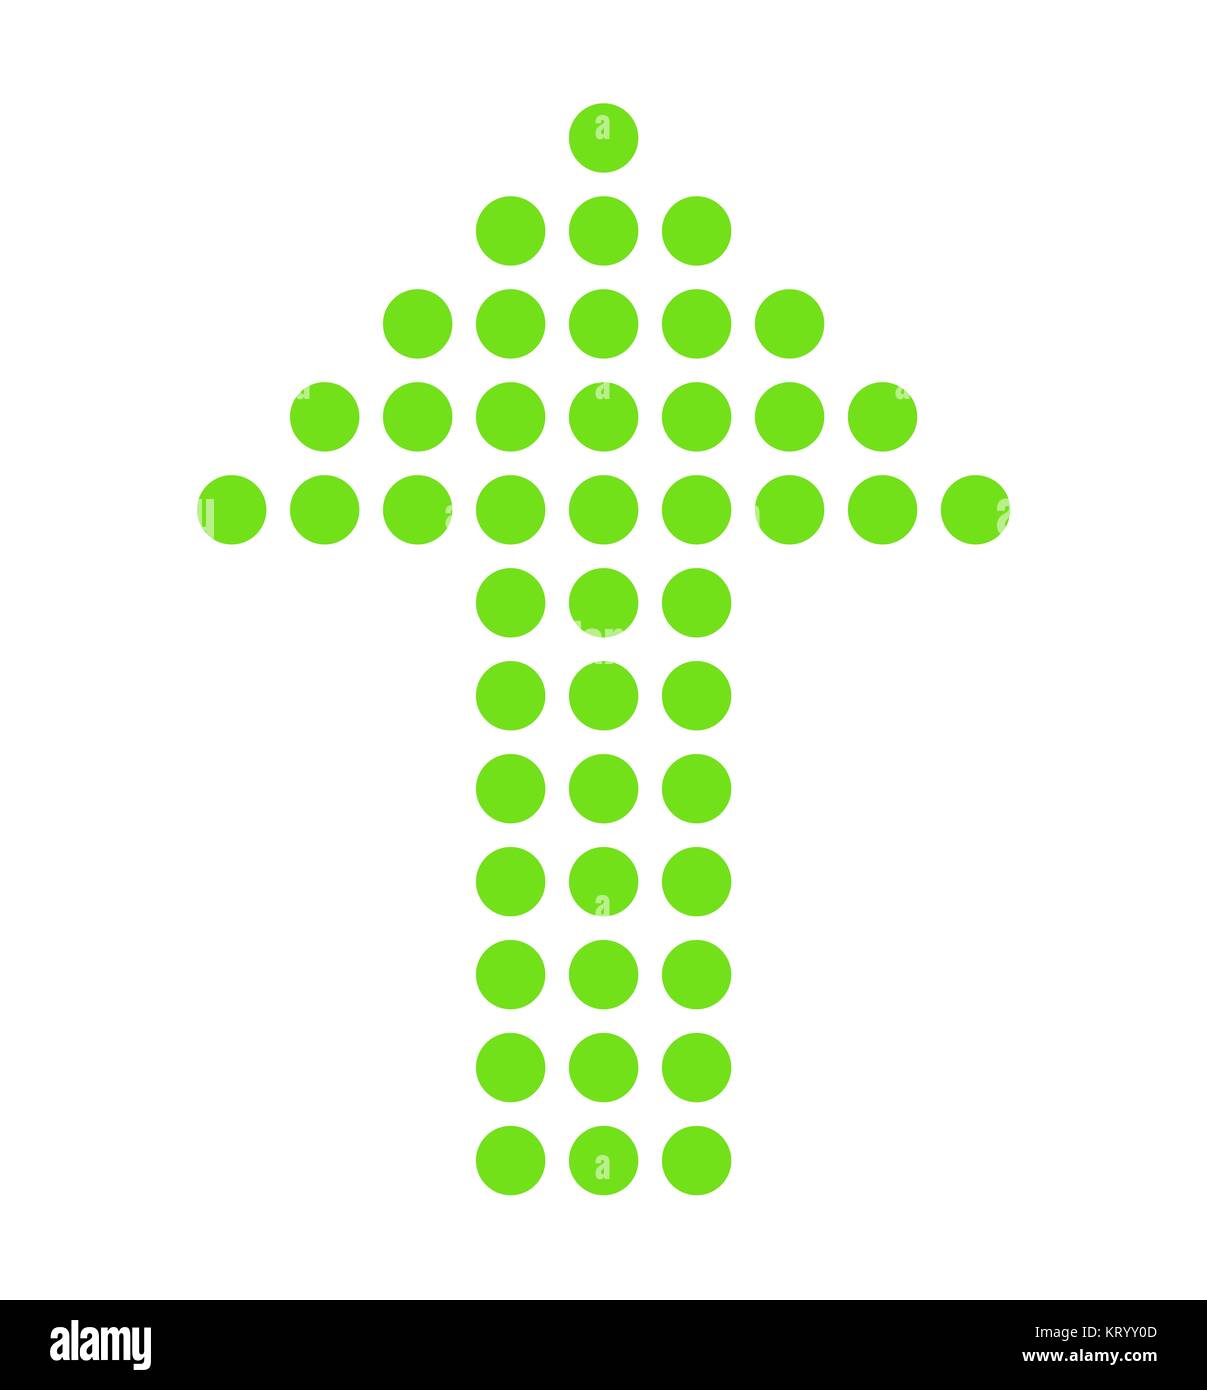 L'icône flèche isolés à partir de points verts Banque D'Images